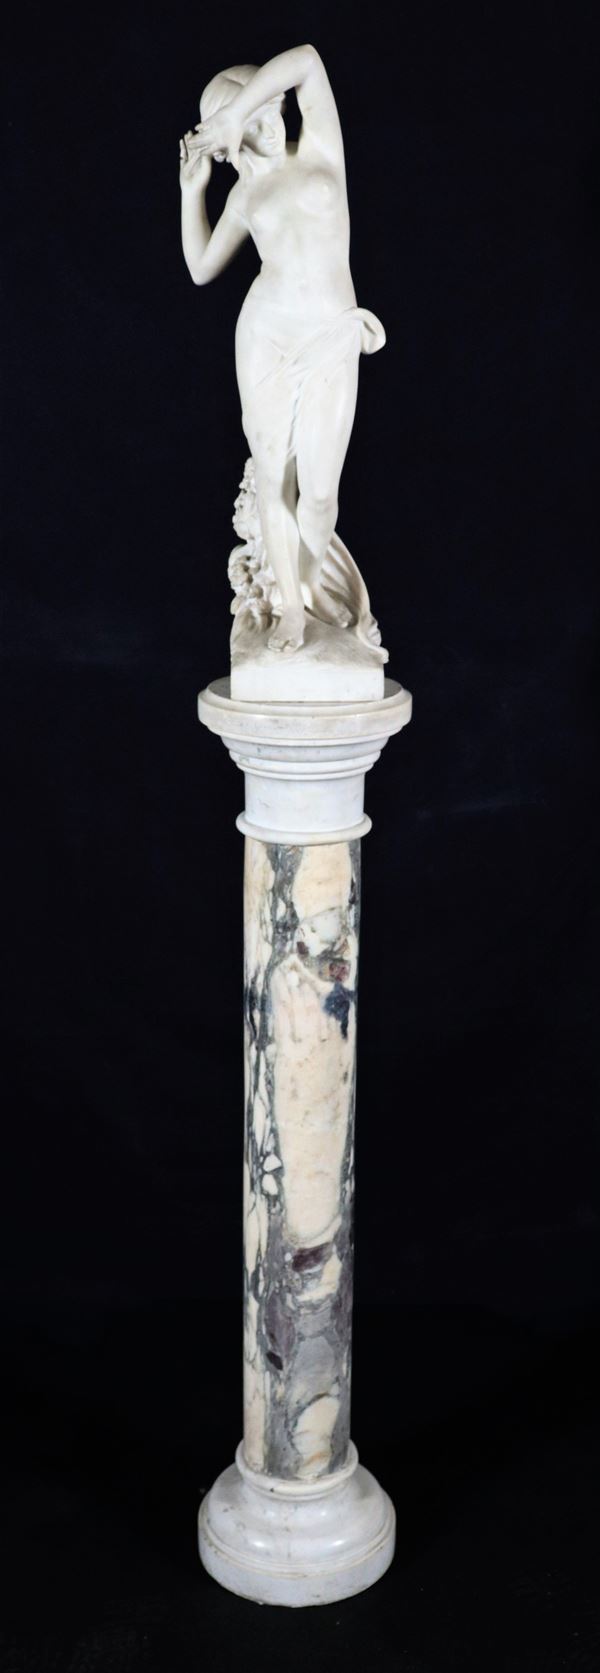 Felli L. attivo a Firenze XIX - XX Secolo - Scultura in marmo bianco "Nudo di ragazza" di gusto Art Noveau.  Firmata. Colonna d'accompagno